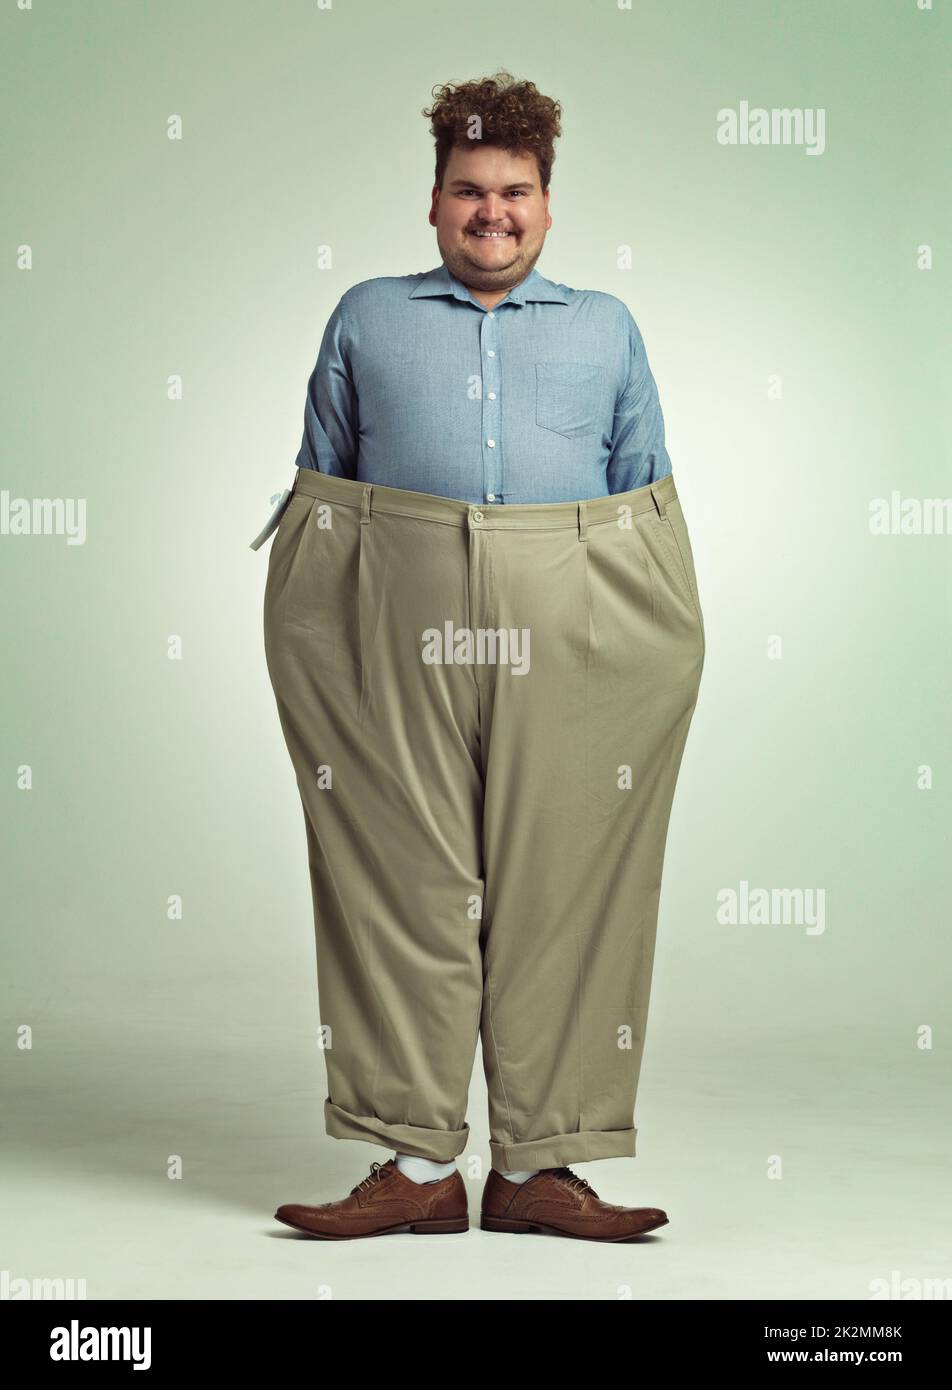 Avanzamento della dieta. Scatto di un uomo sovrappeso che indossa un paio di pantaloni oversize che hanno un aspetto contento. Foto Stock